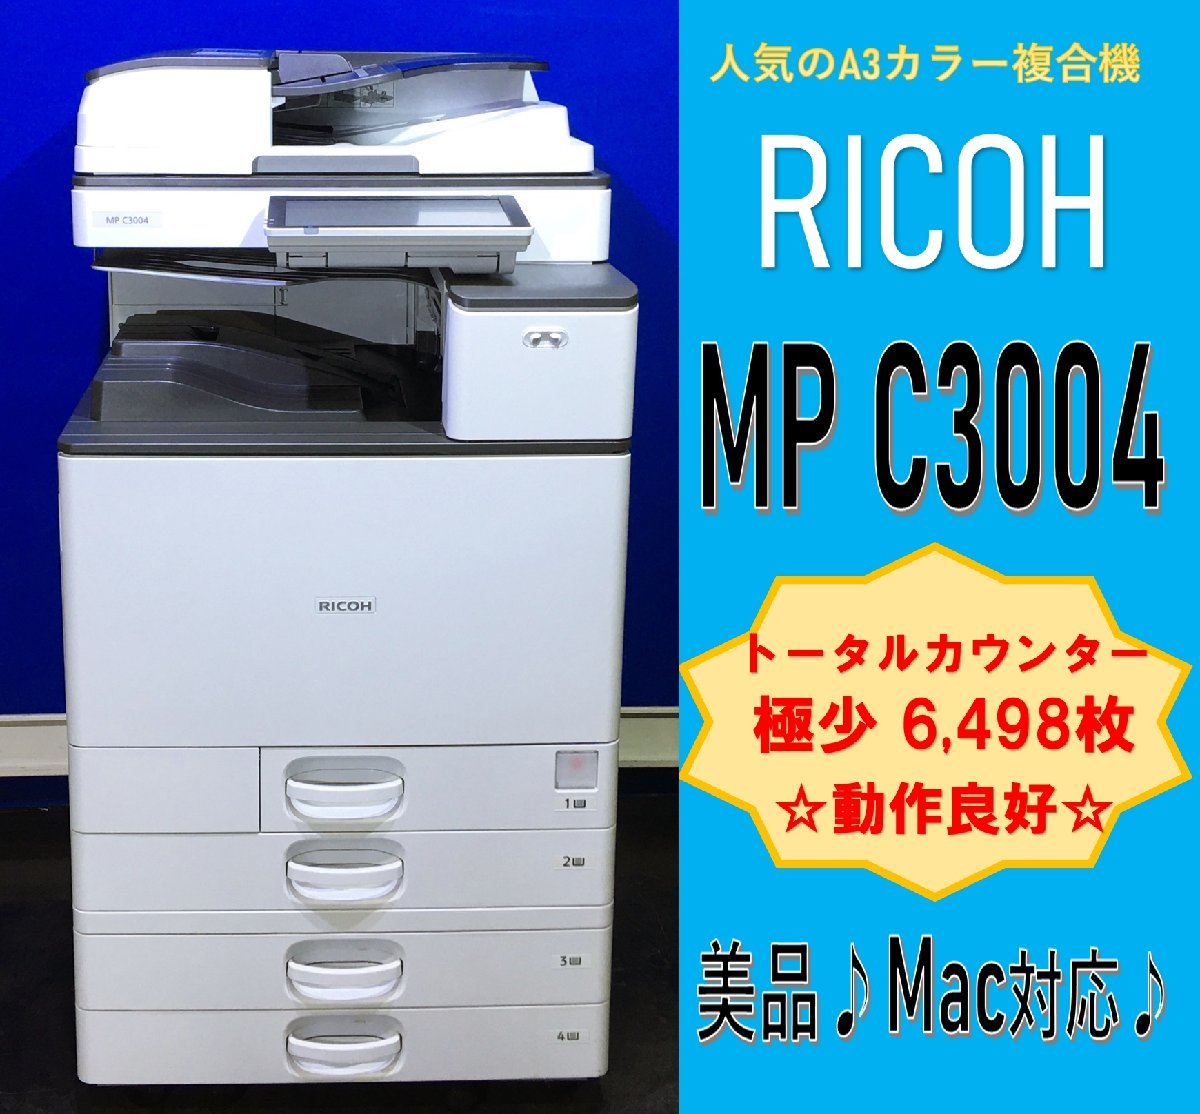 [ Koshigaya departure ][RICOH] цветная многофункциональная машина *MP C3004*[ высшее немного ] счетчик 6,498 листов [Mac соответствует ]* рабочее состояние подтверждено * (12883)